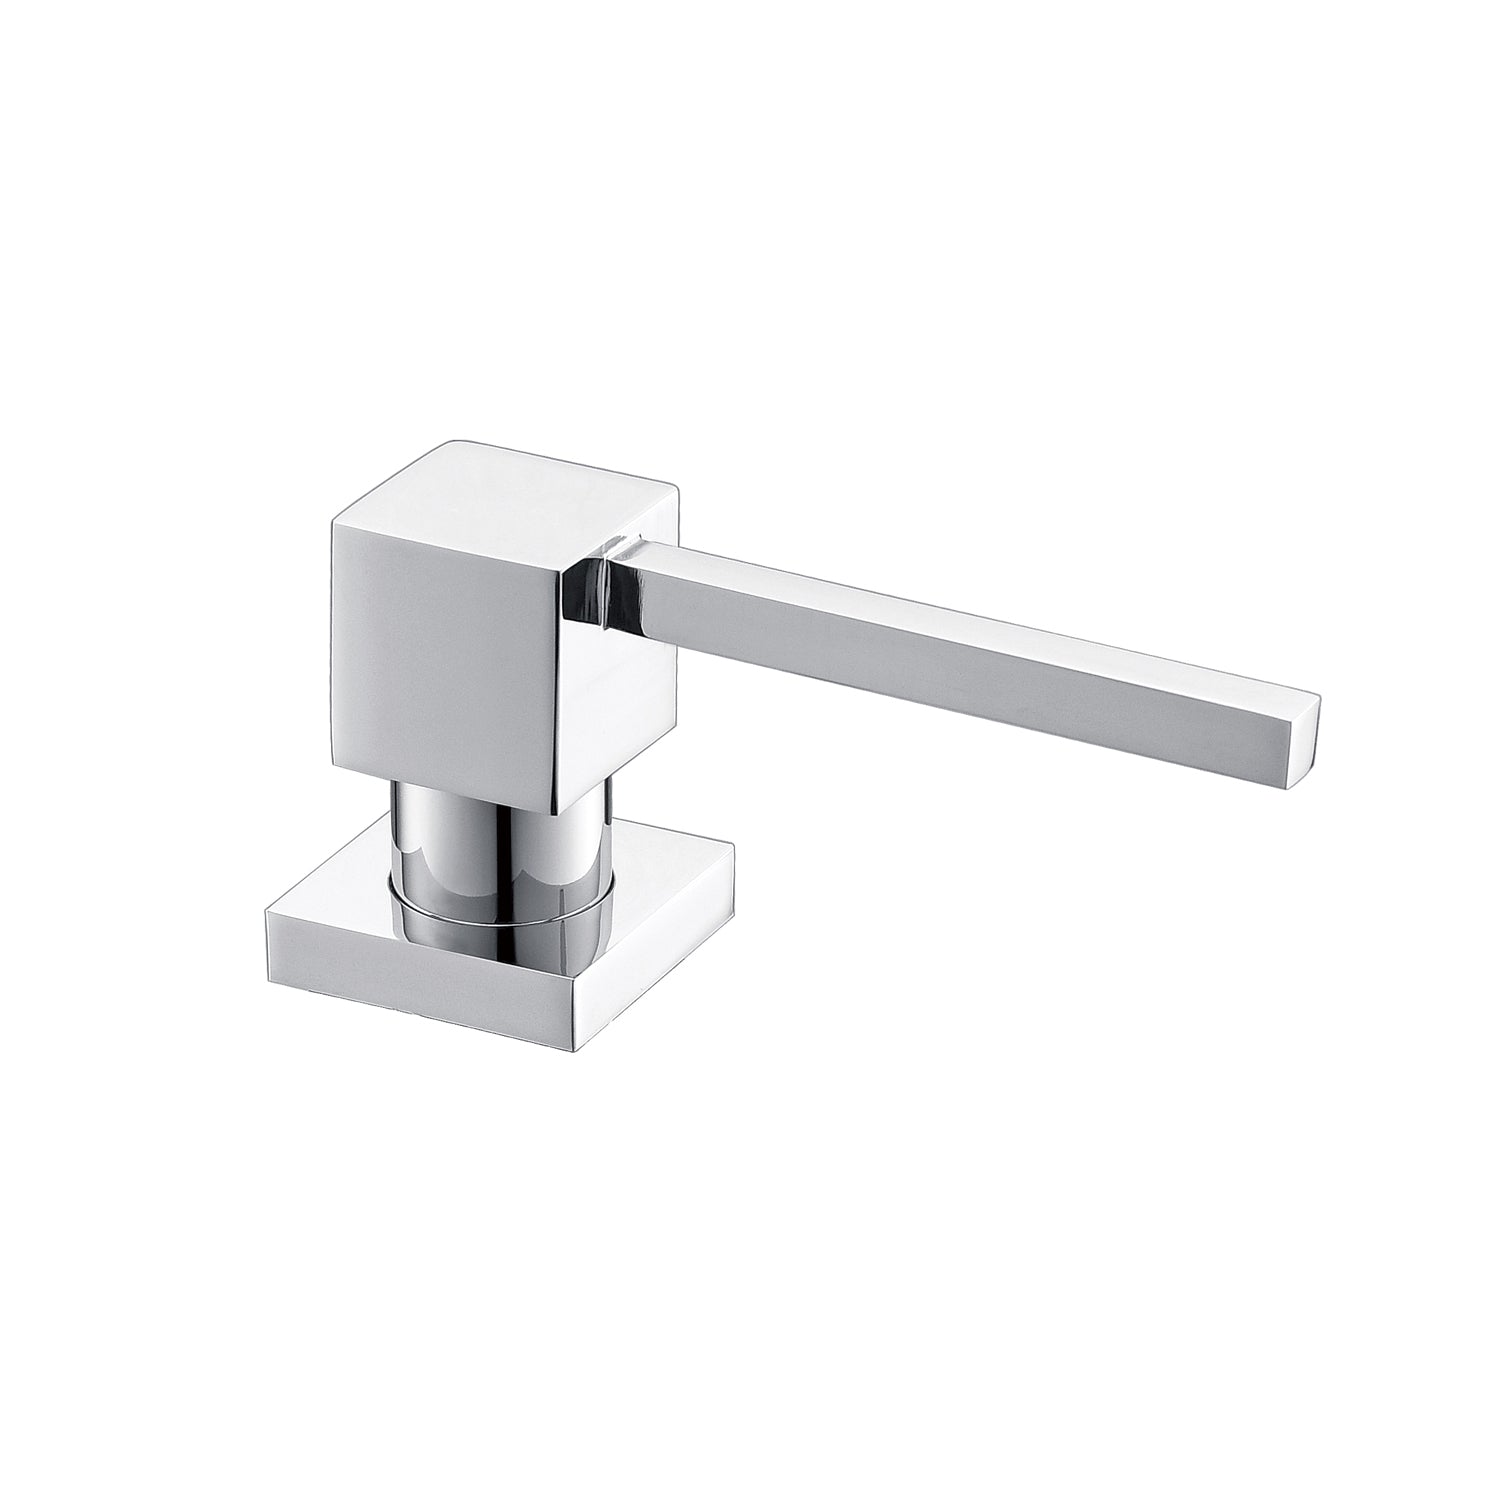 DAX Square Kitchen Sink Soap Dispenser, Deck Mount, Brass Body, 2-9/16 x 12-7/16 x 3-5/8 Inches (DAX-1001)